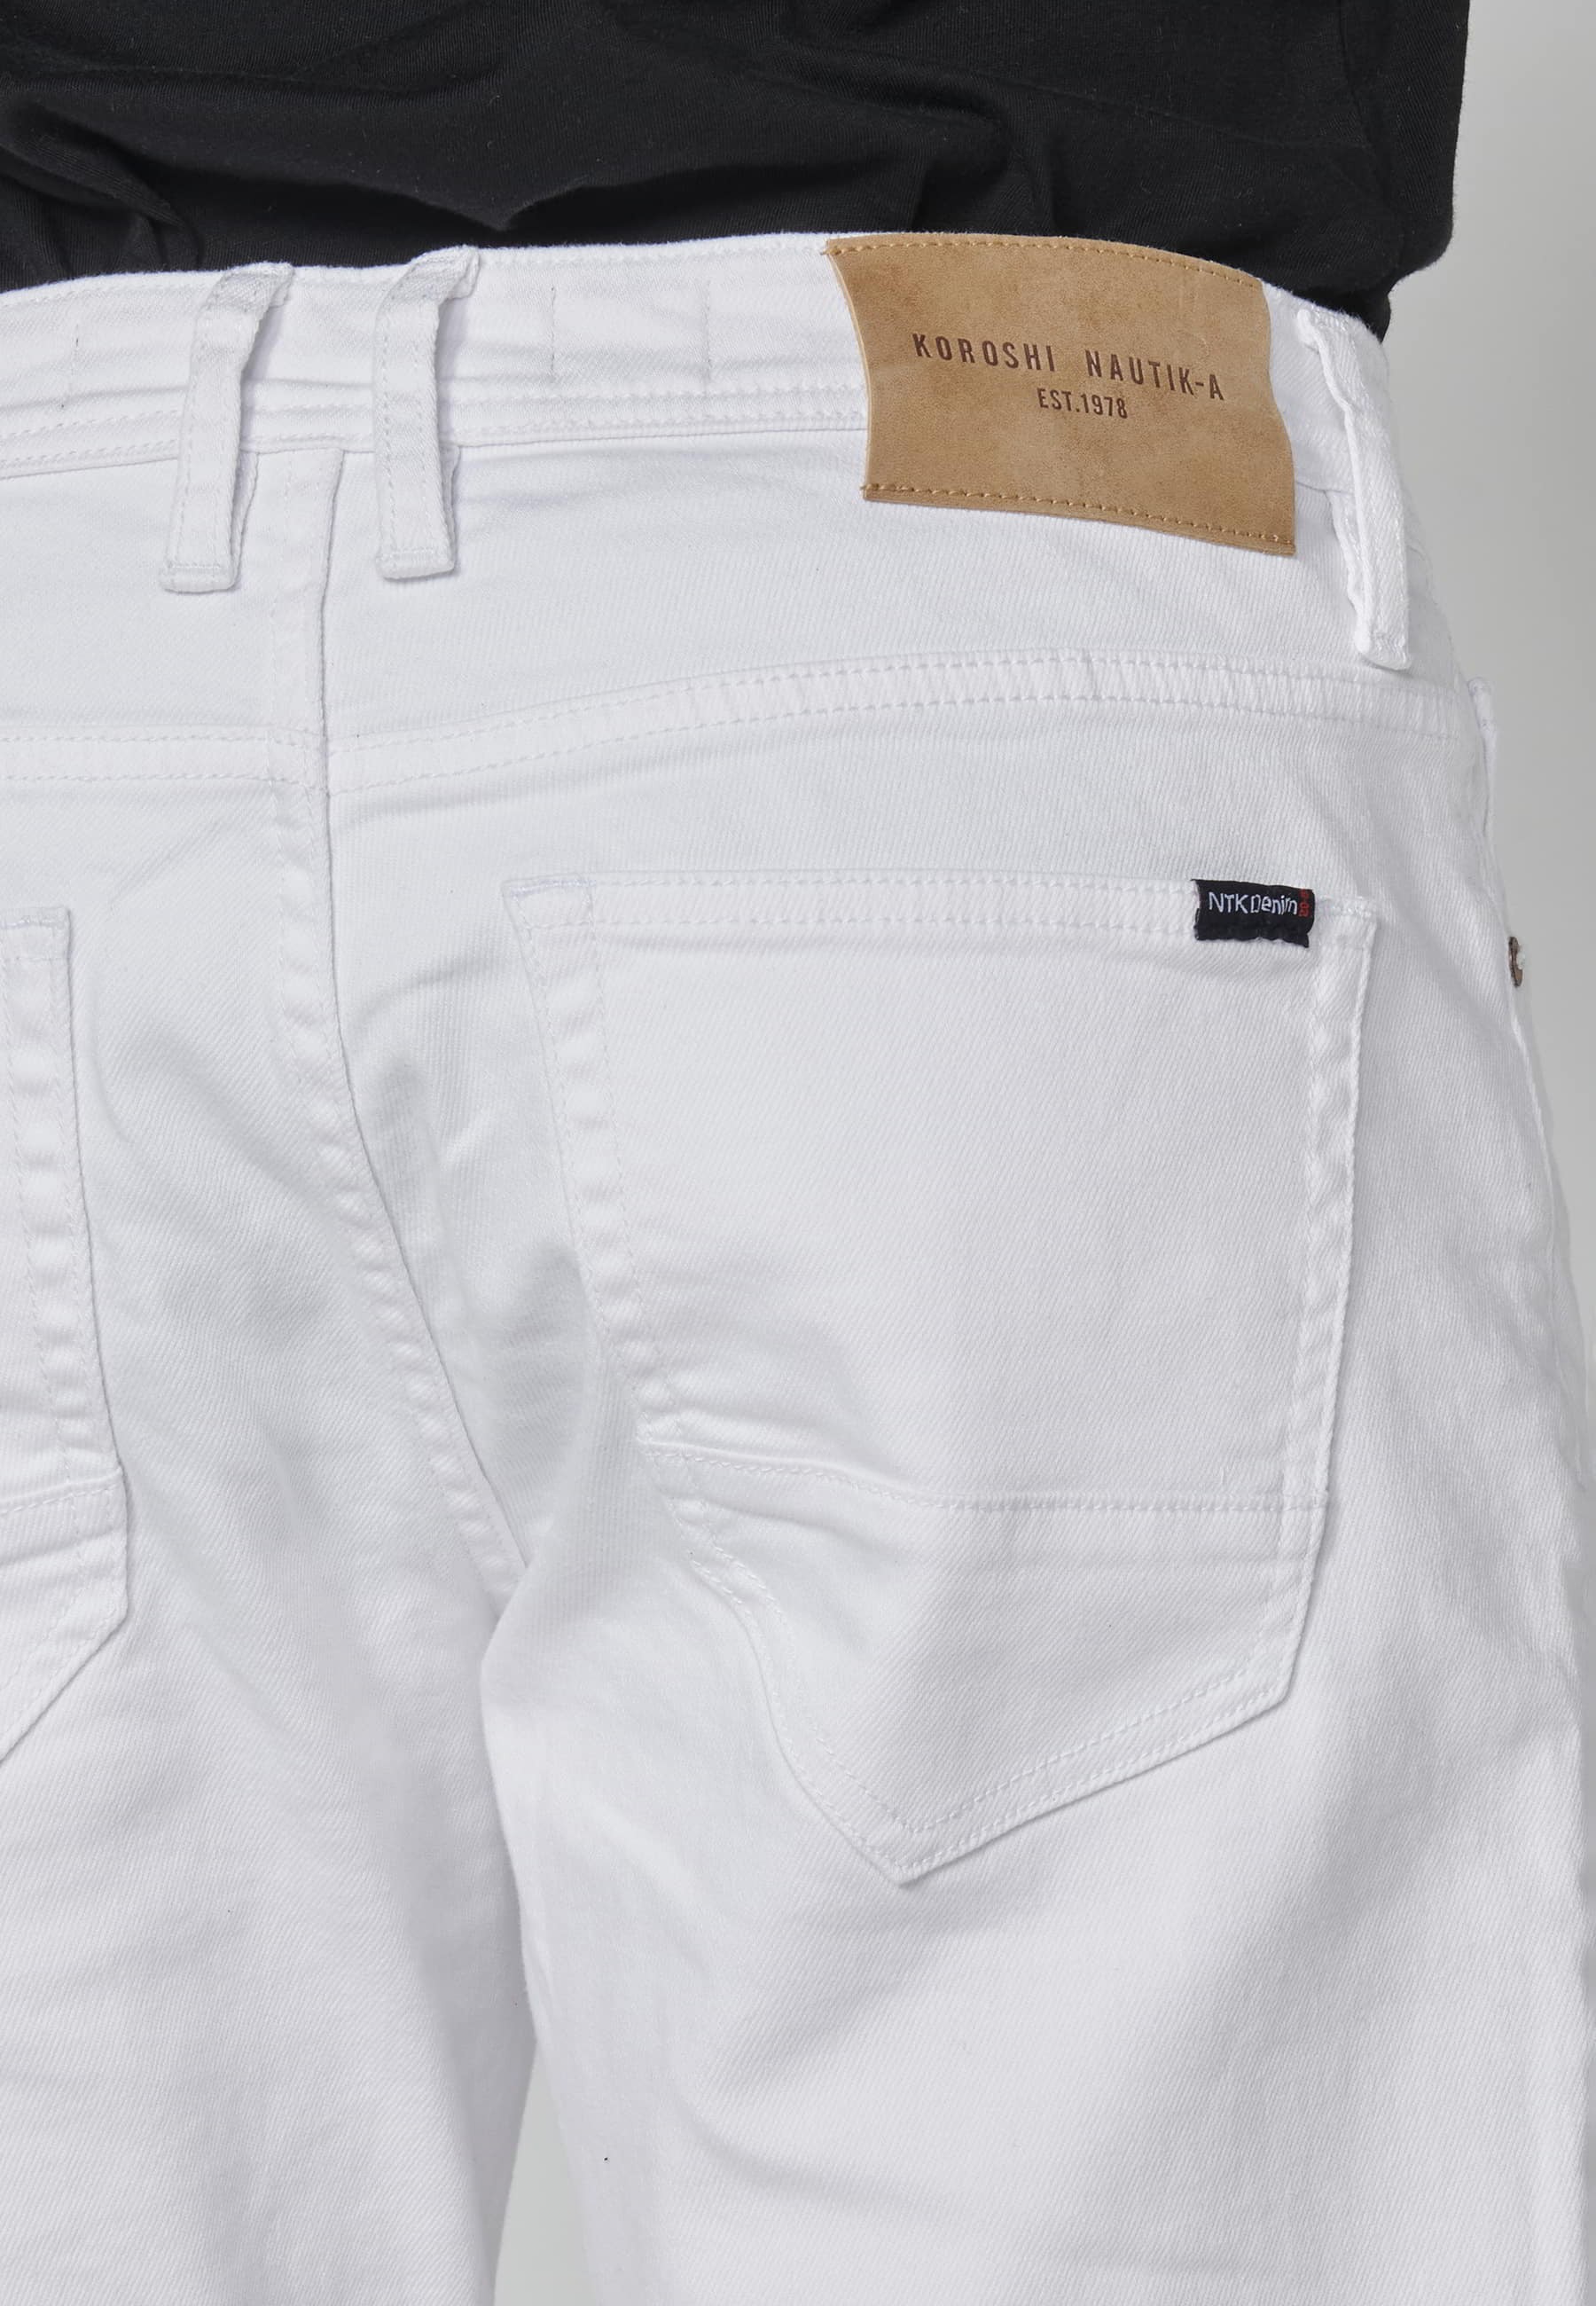 Weiße Stretch-Bermuda-Denim-Shorts für Herren in normaler Passform mit vier Taschen